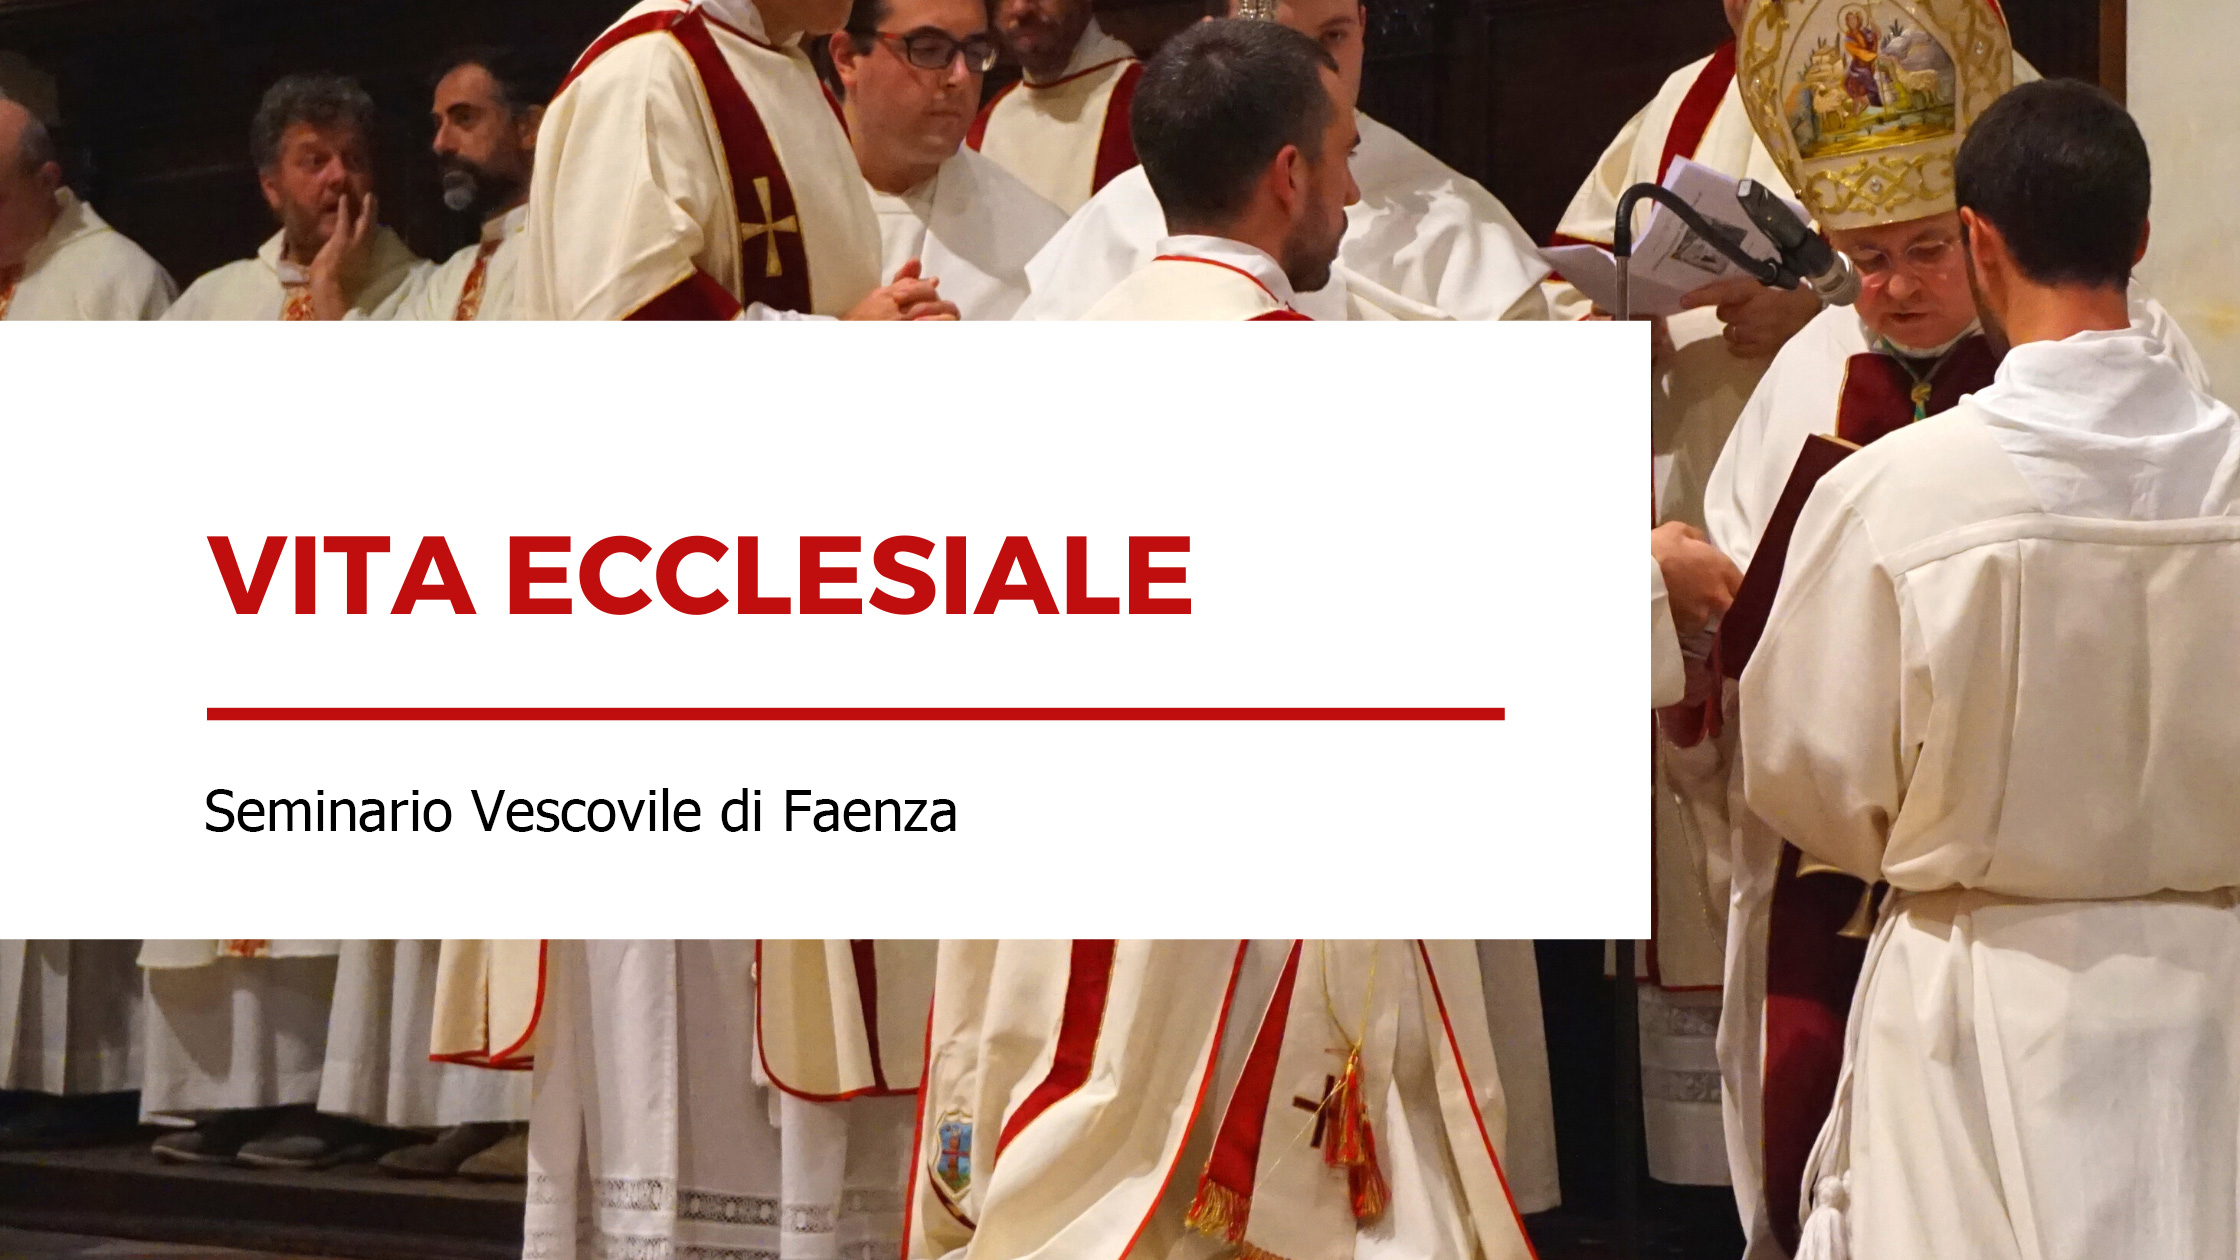 Vita ecclesiale - Seminario Vescovile di Faenza